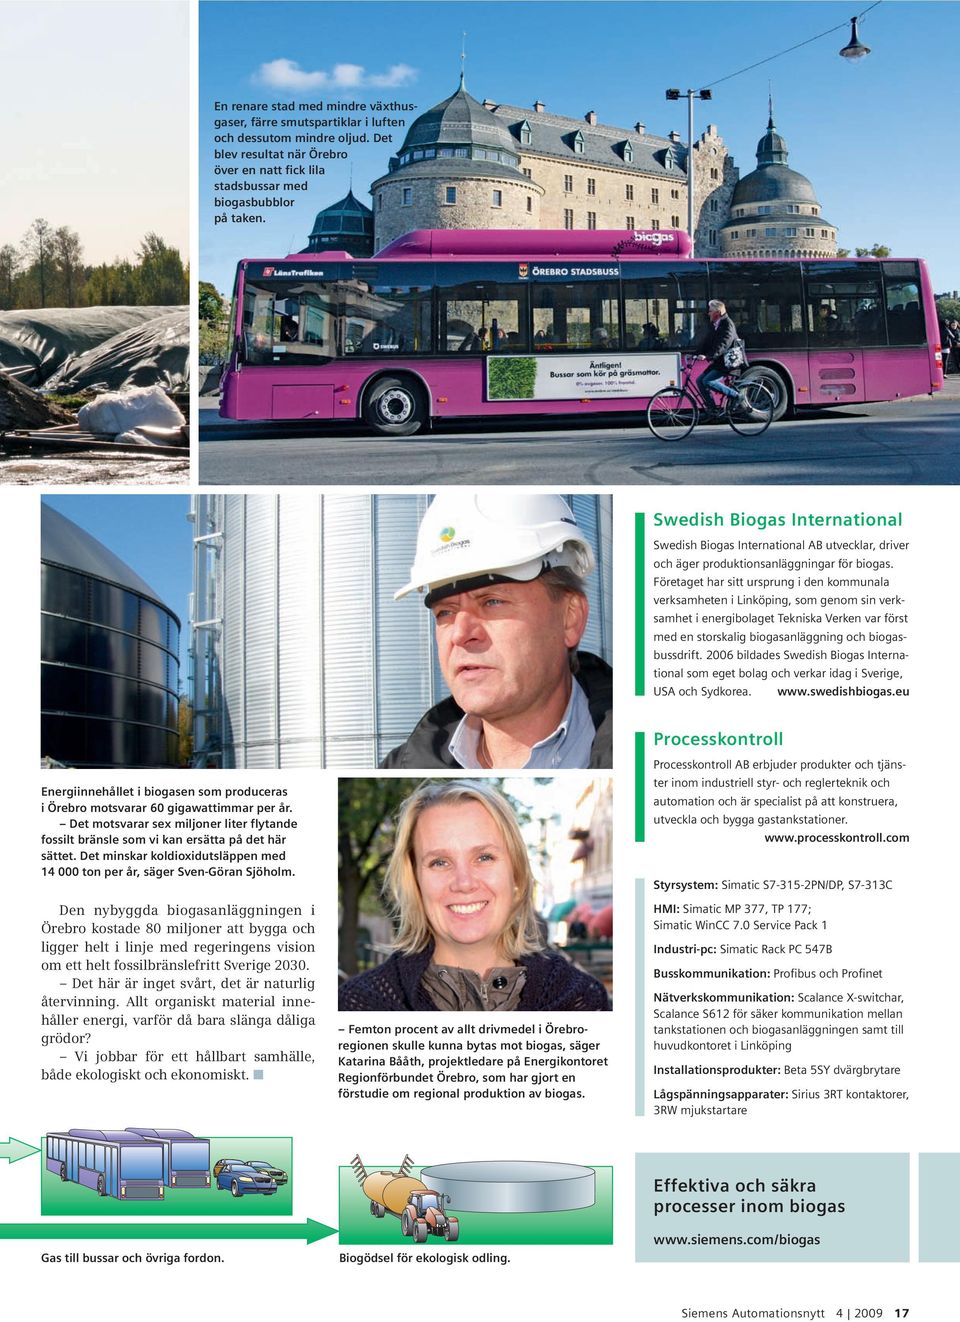 Företaget har sitt ursprung i den kommunala verksamheten i Linköping, som genom sin verksamhet i energibolaget Tekniska Verken var först med en storskalig biogasanläggning och biogasbussdrift.